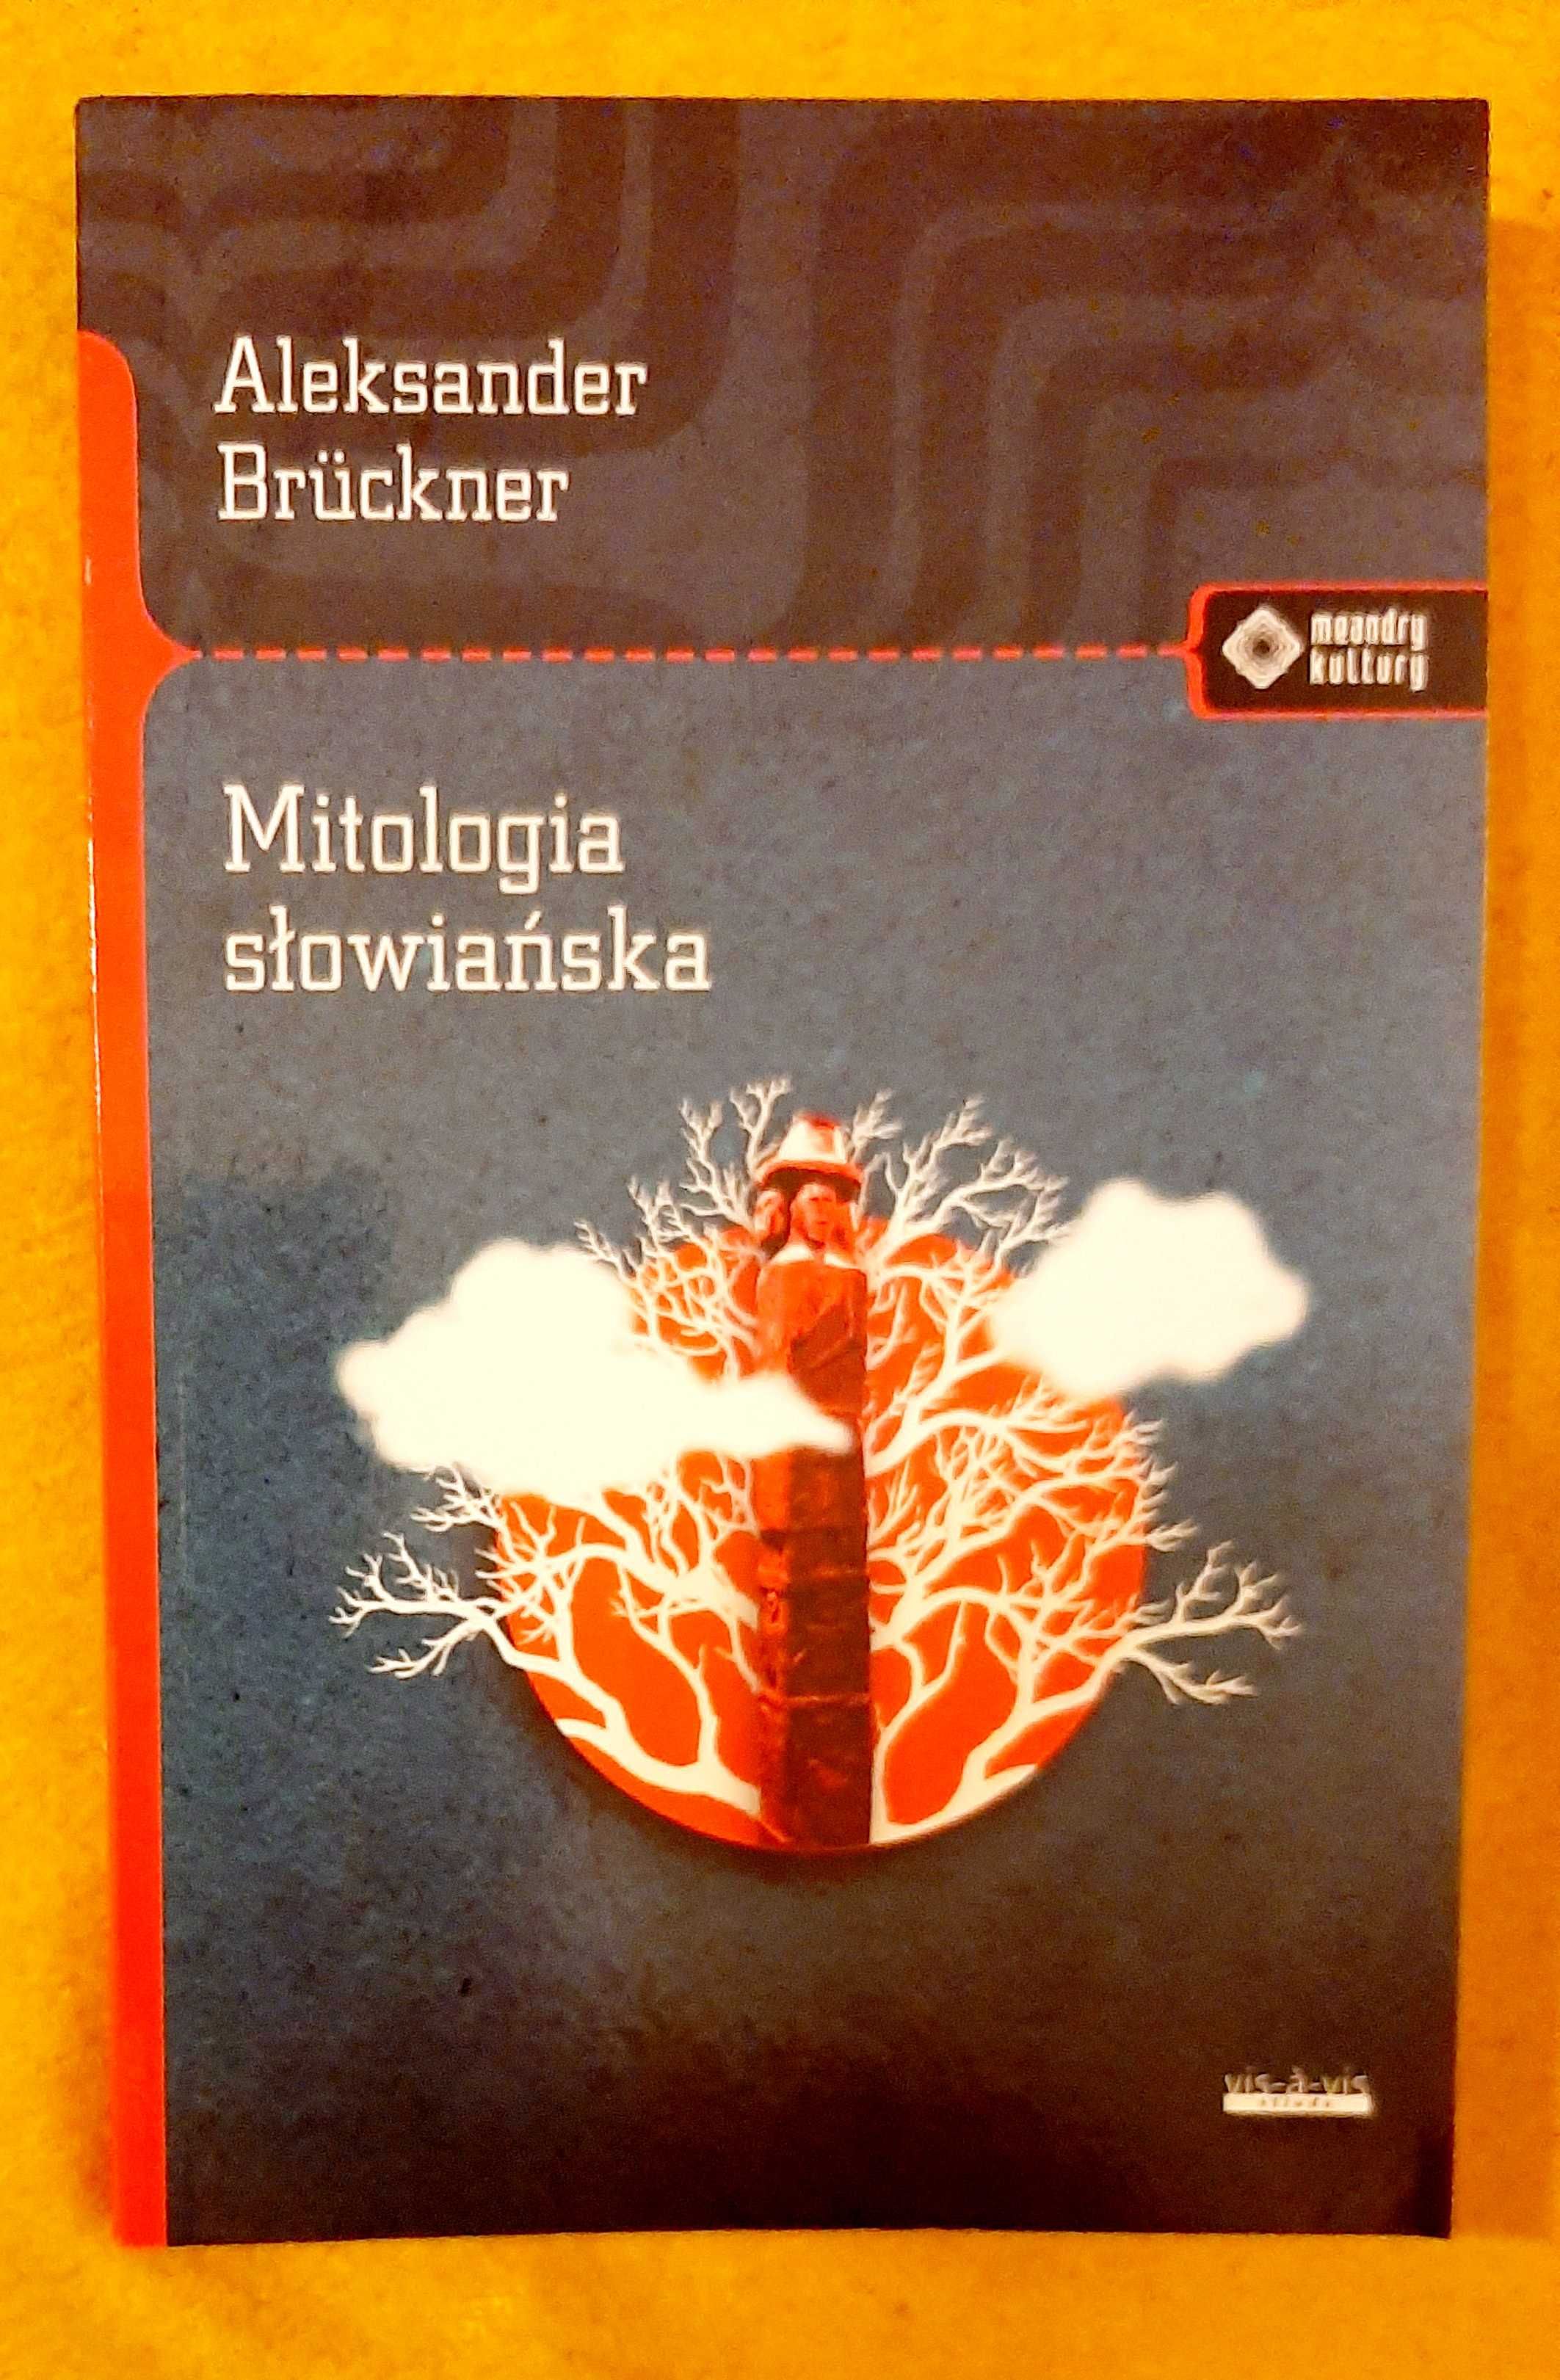 Aleksander Bruckner, Mitologia słowiańska